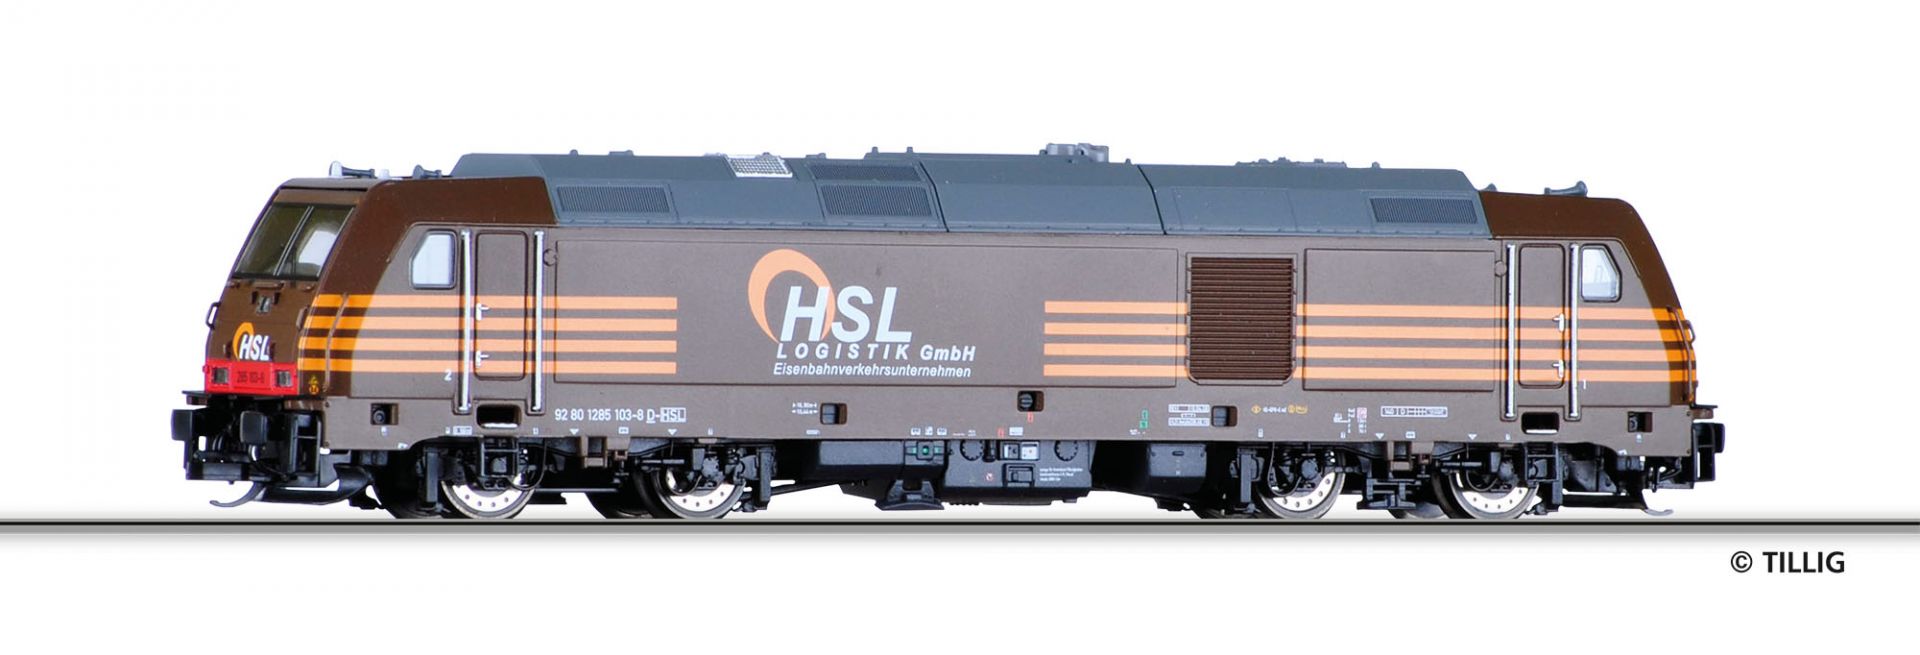 04938 | Diesellokomotive HSL -werksseitig ausverkauft-